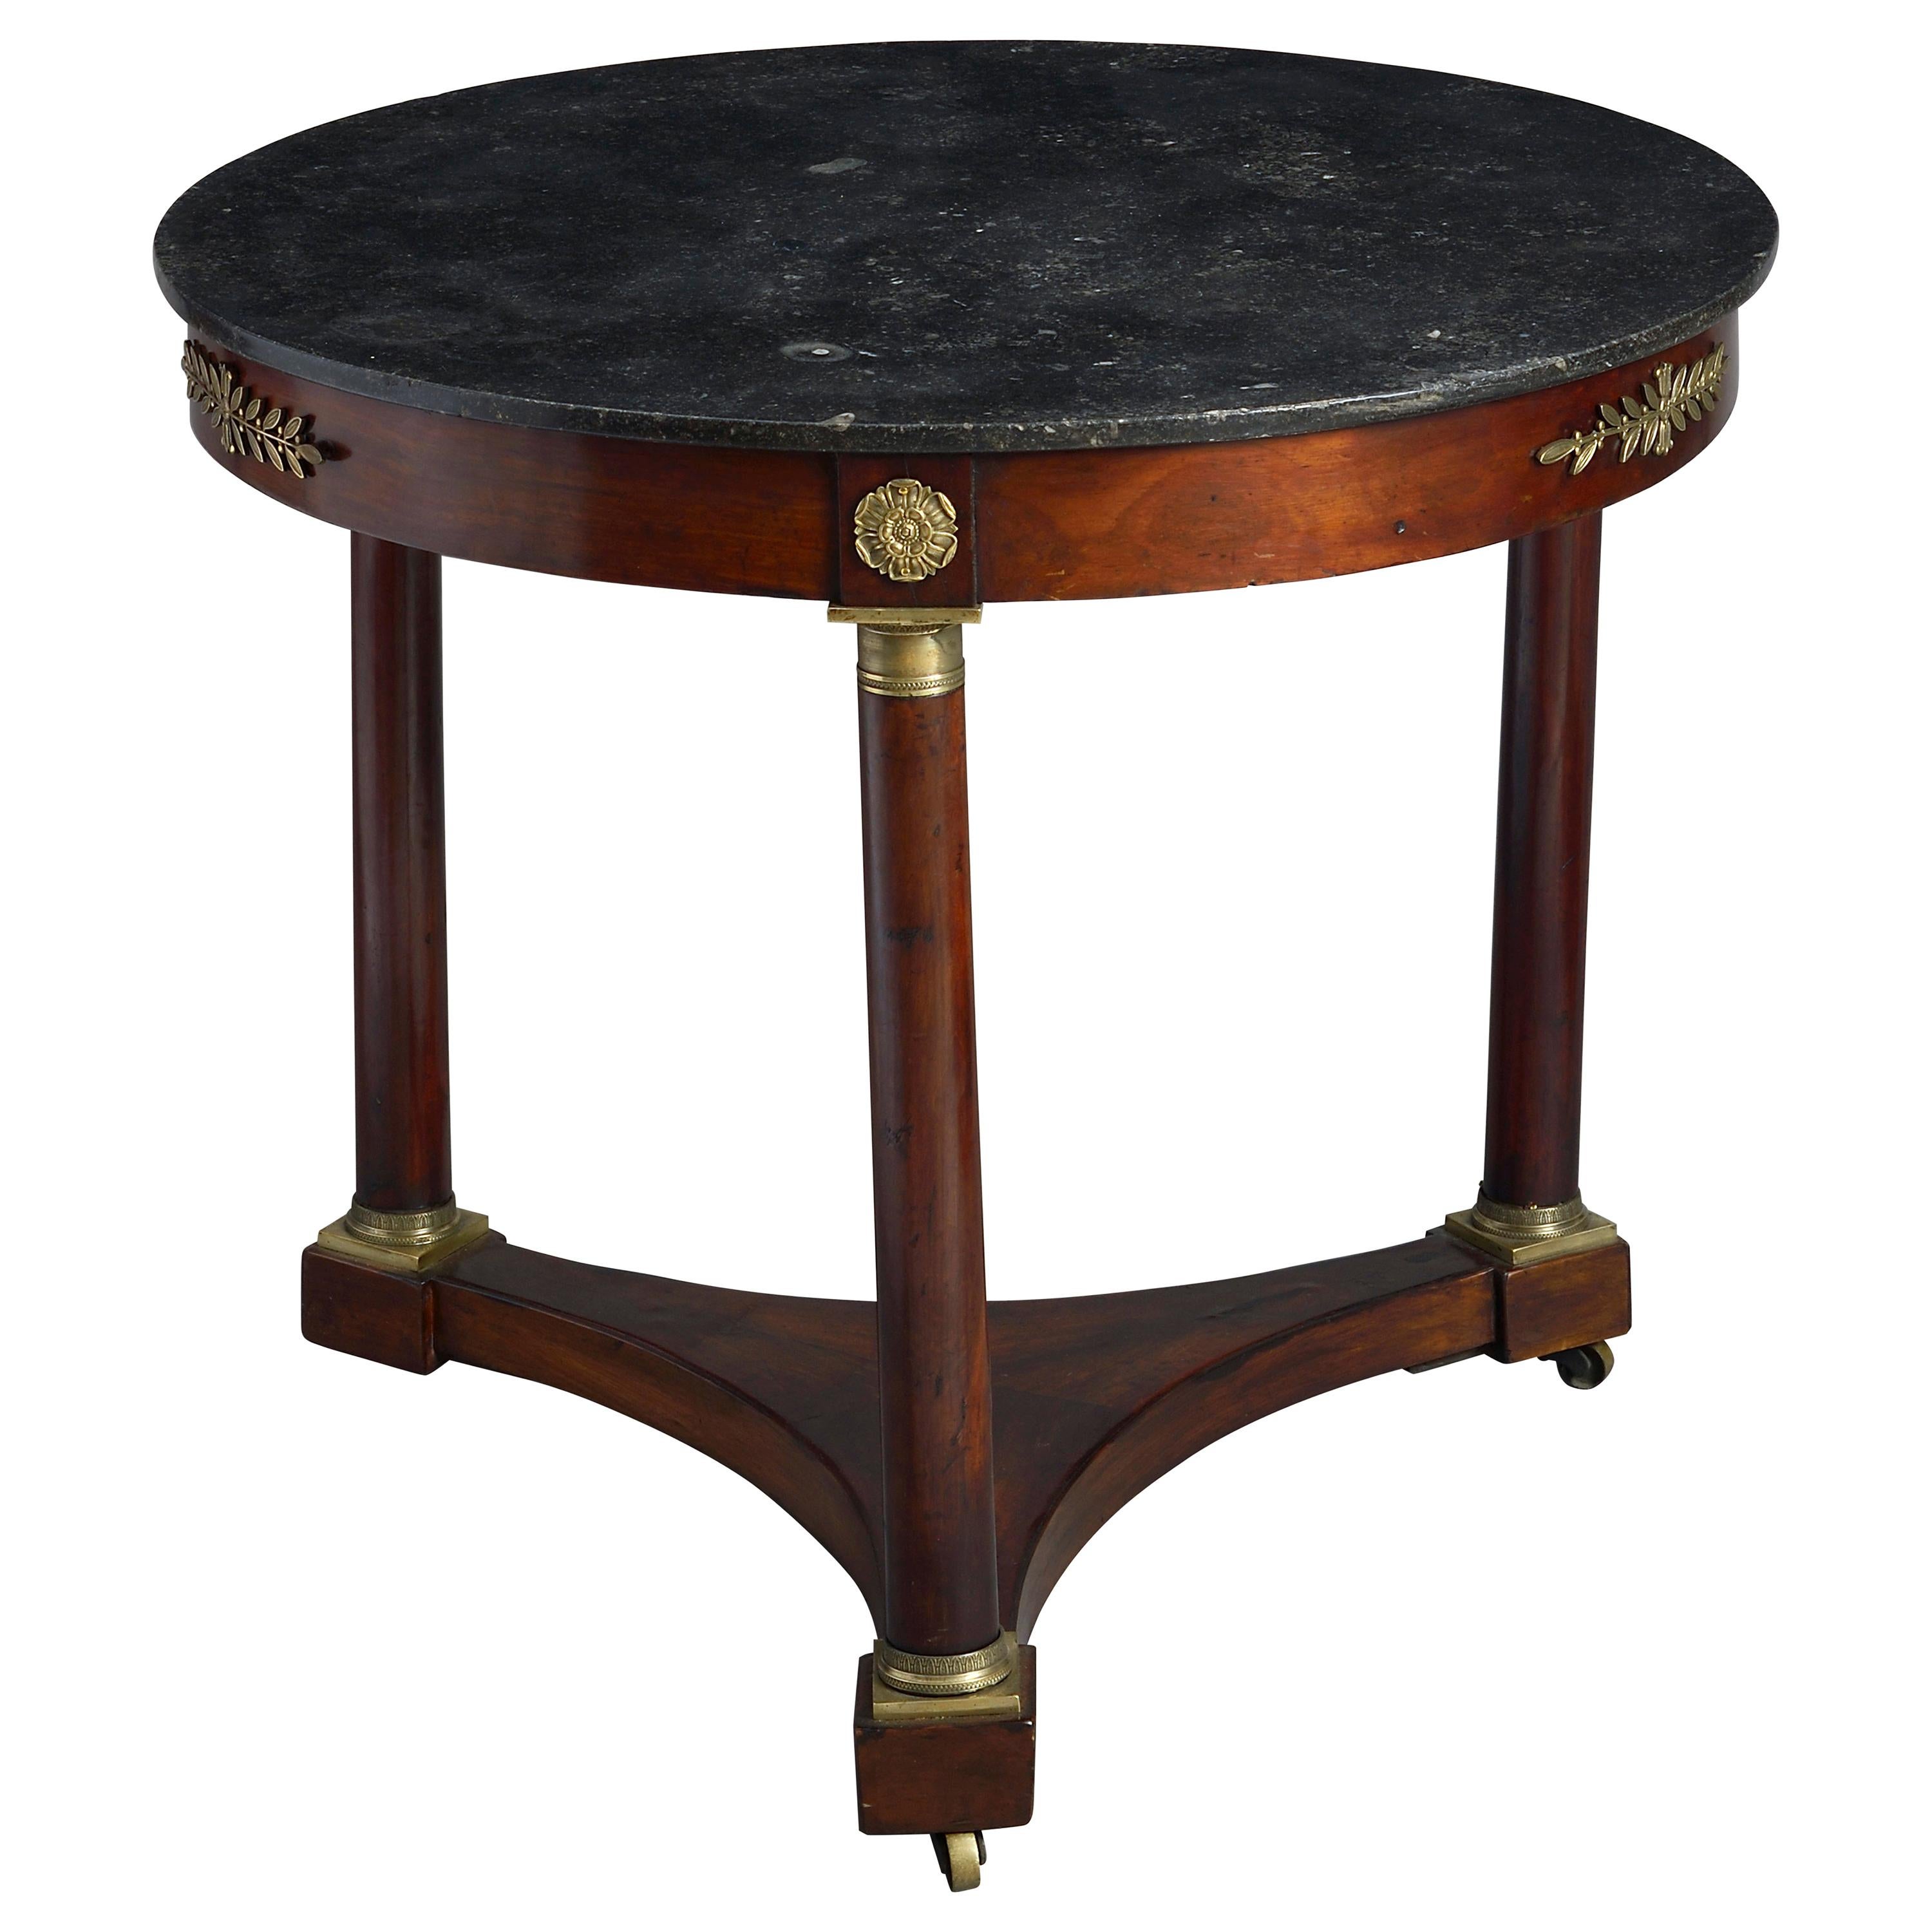 Early 19th Century Empire Period Mahogany Centre Table